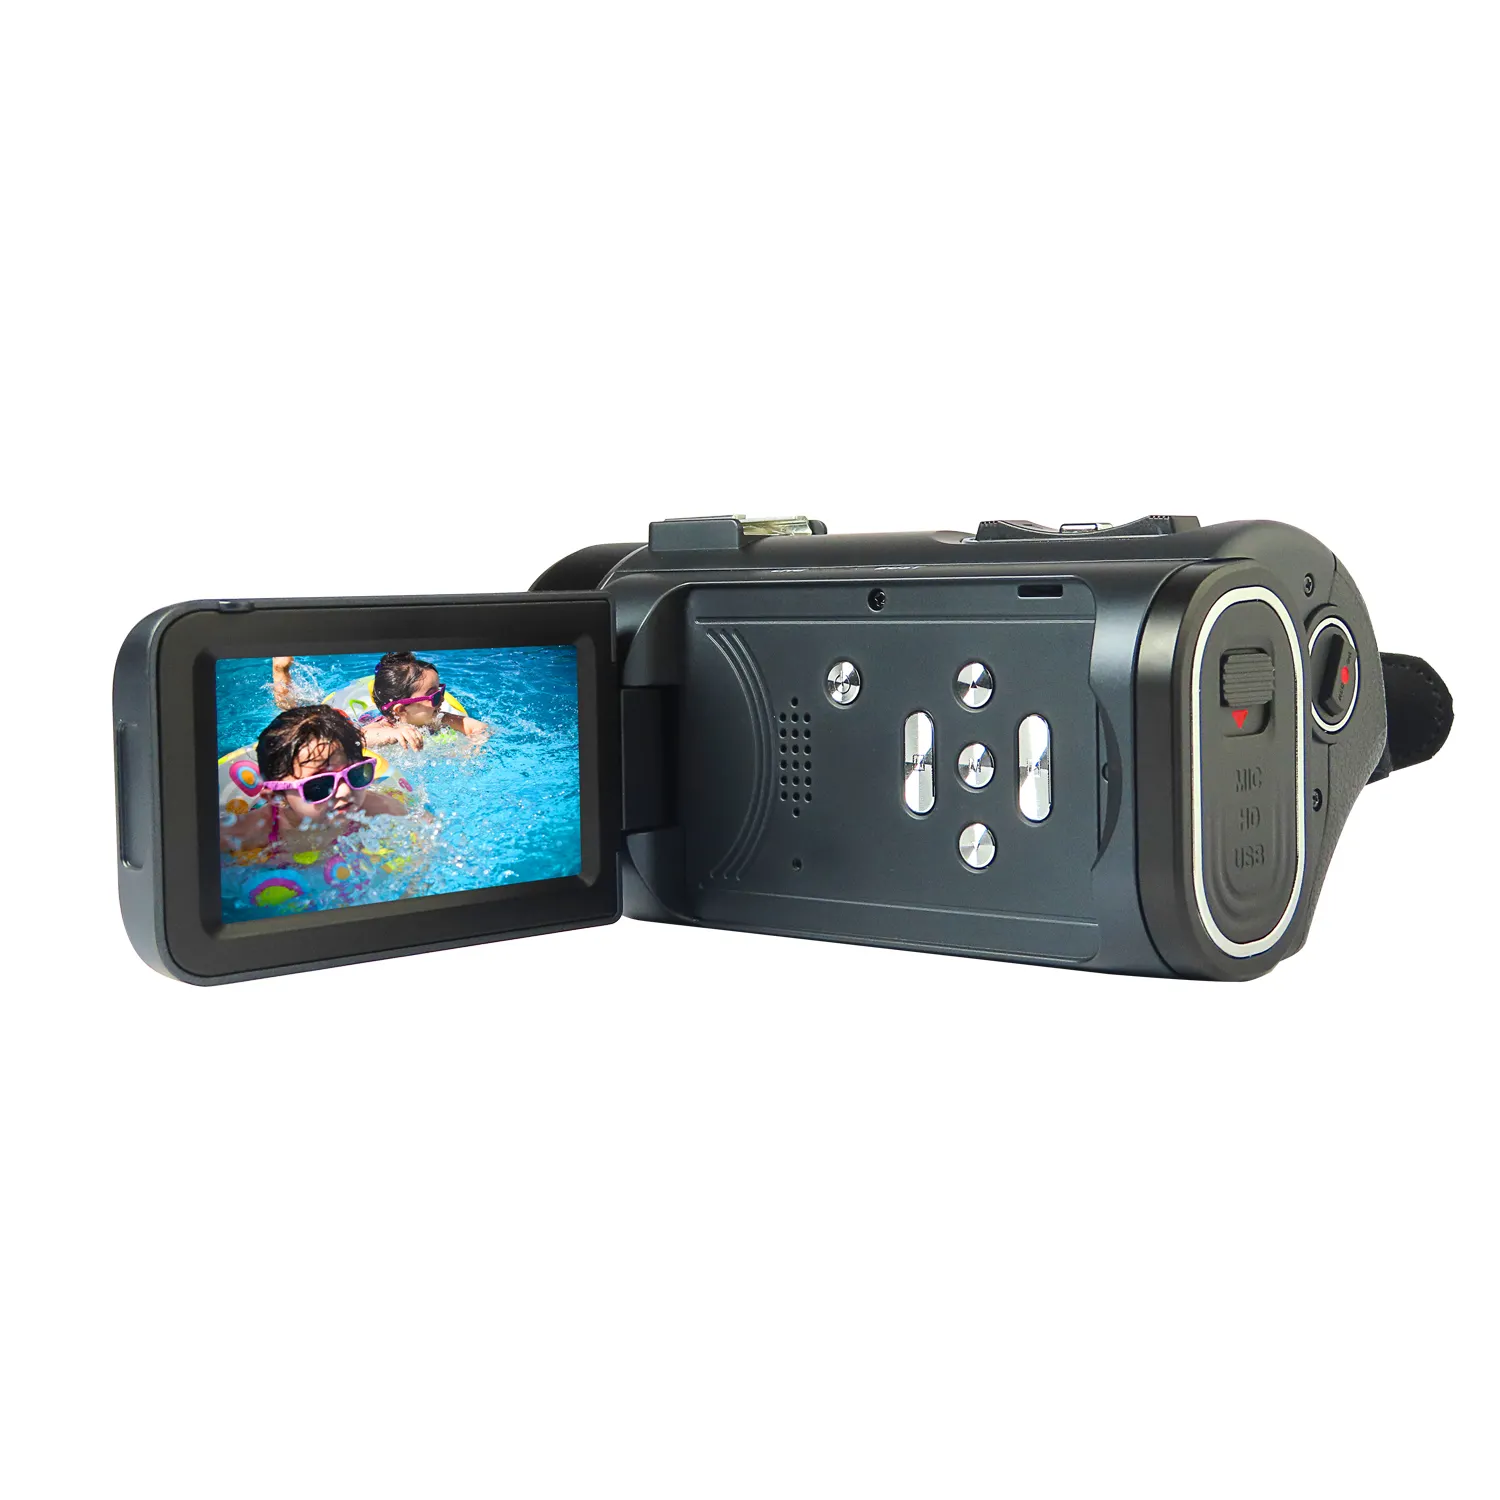 4K Digital Zoom 3 Mega Pixel Cmos 3.0"Tft Lcd Dv08 Digital Video Camcorder Hd Digital Video Cameras